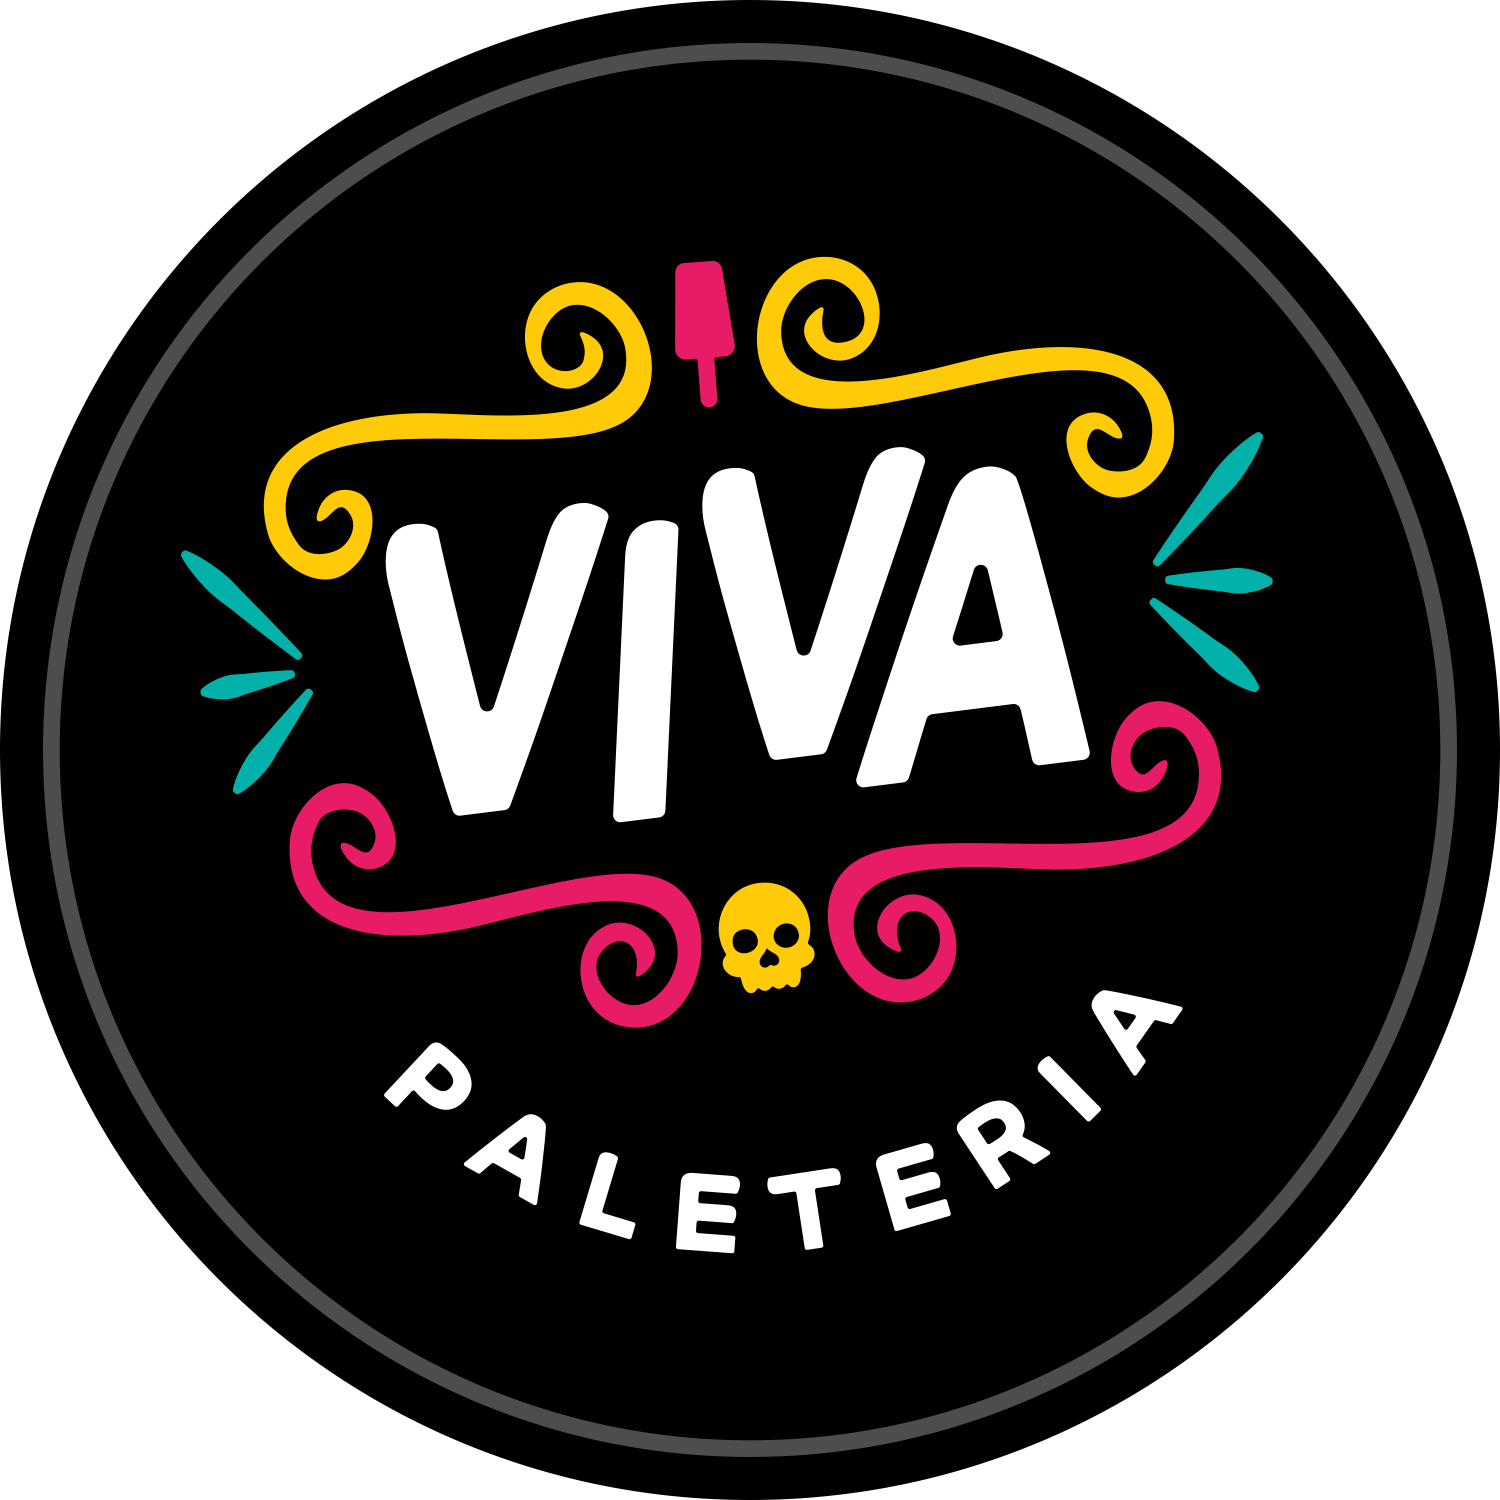 Viva Paleteria